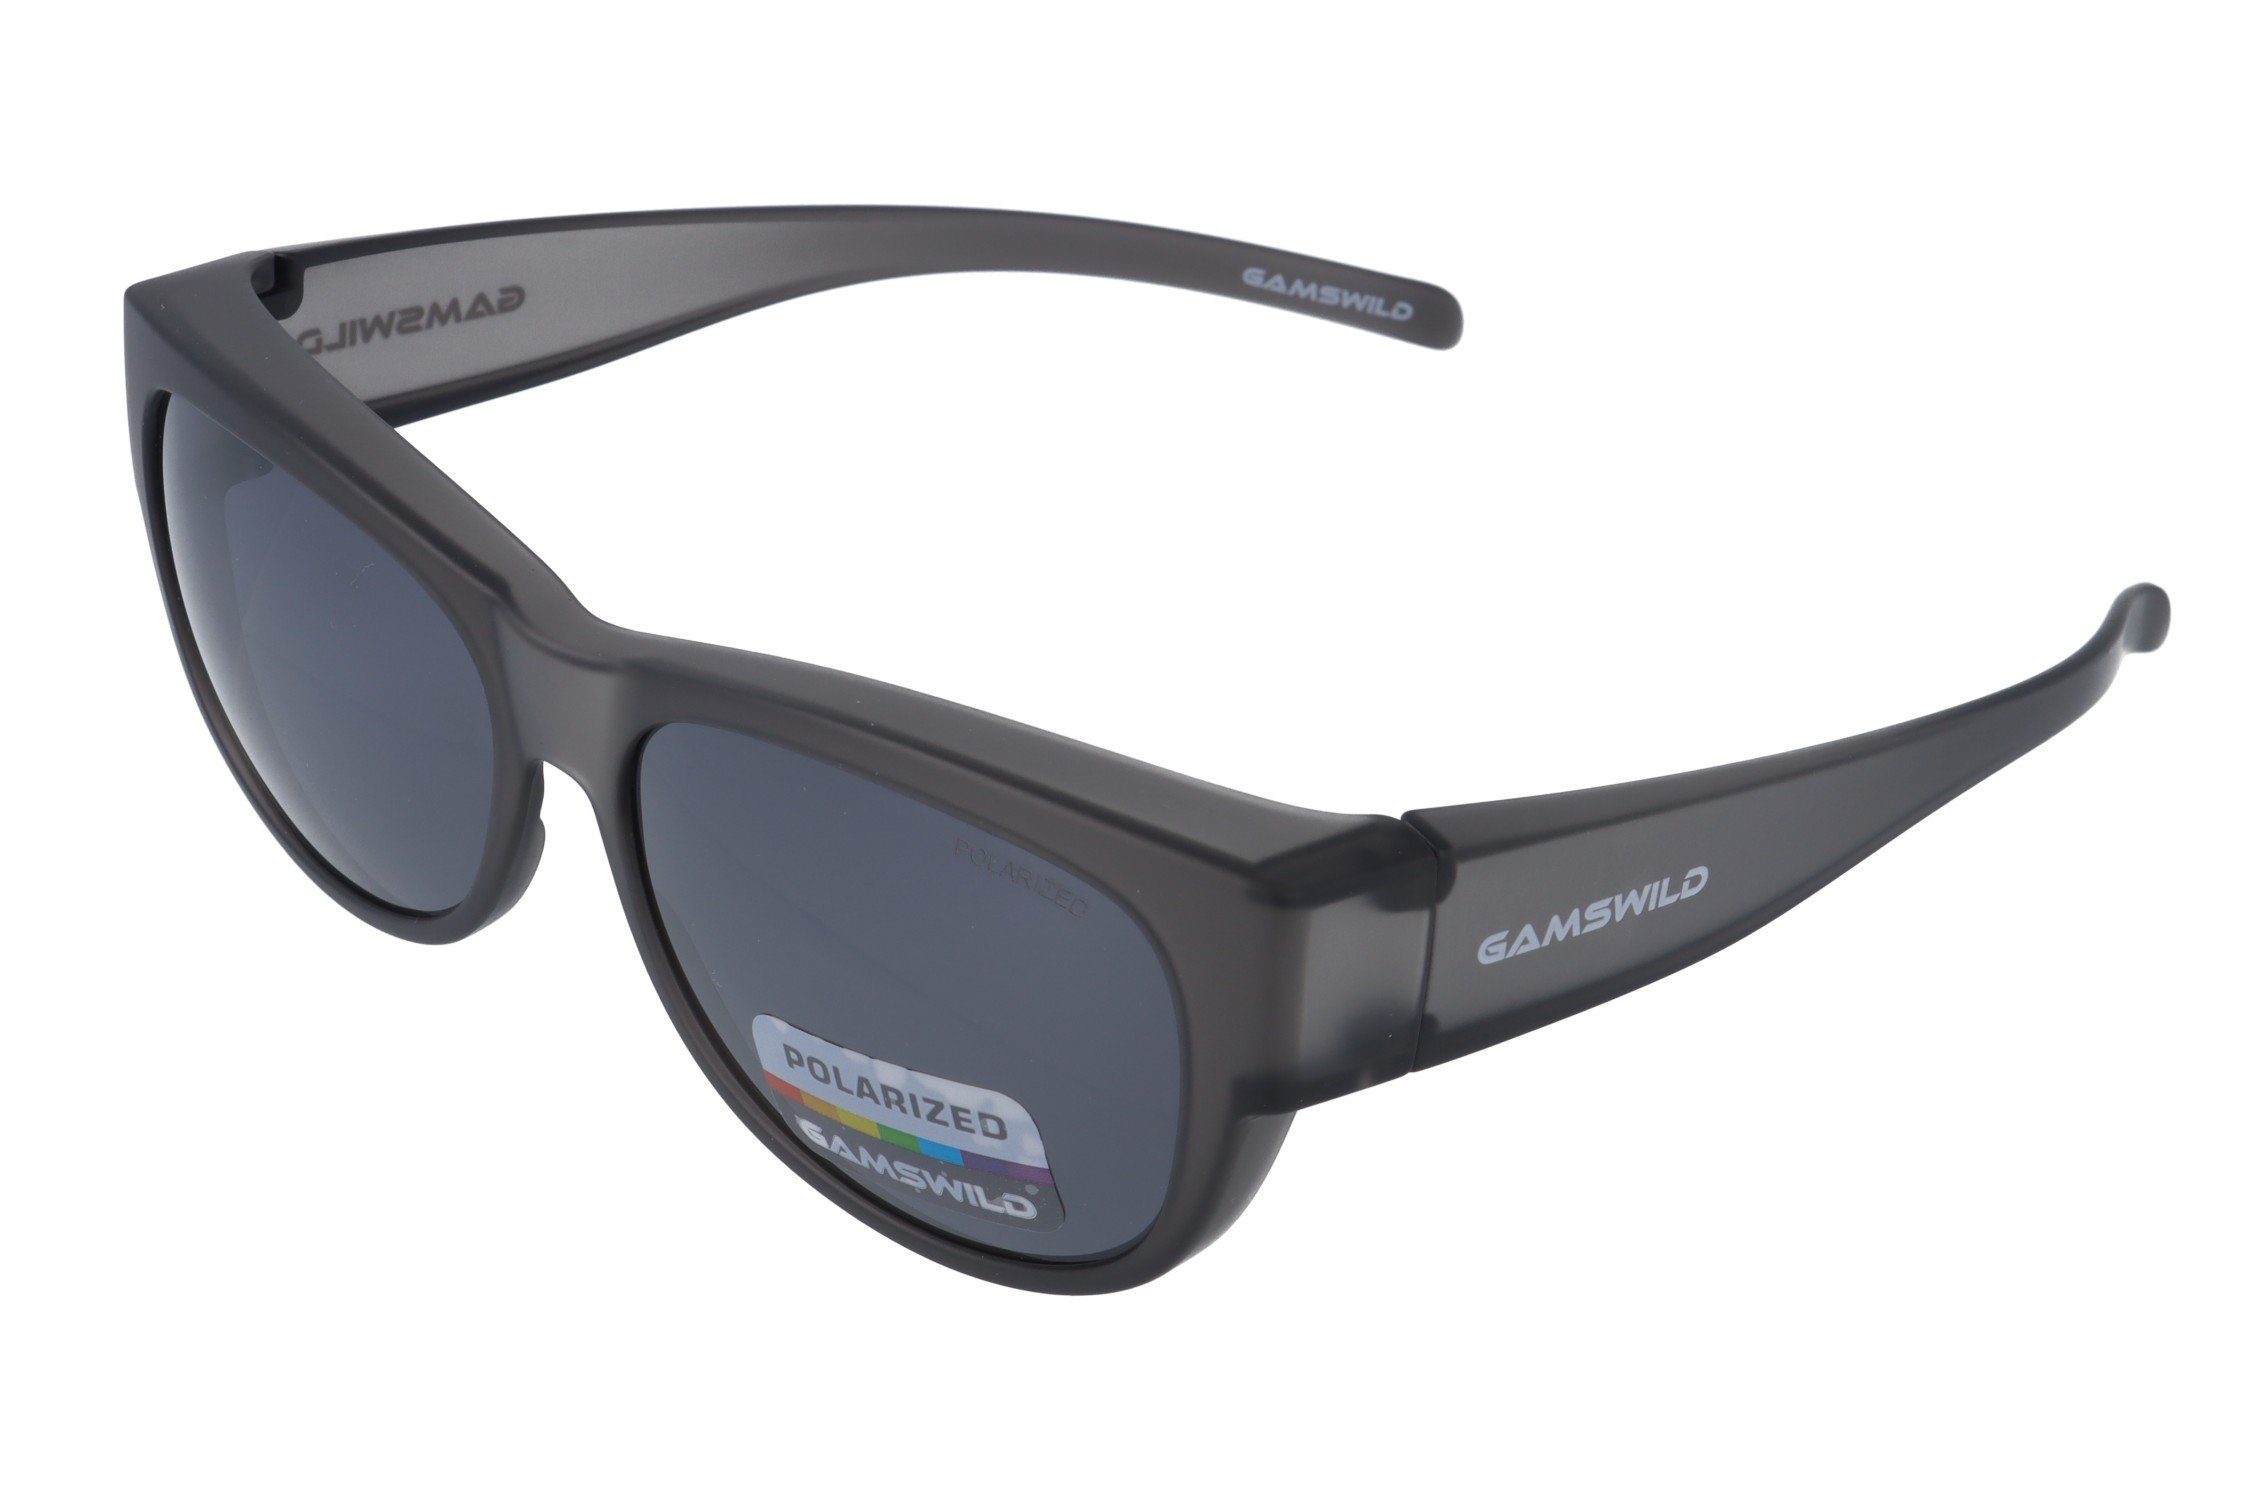 Gamswild Sonnenbrille WS4032 Überbrille Sportbrille Damen Herren, schwarz, braun, grau polarisiert, universelle Passform grau-transparent